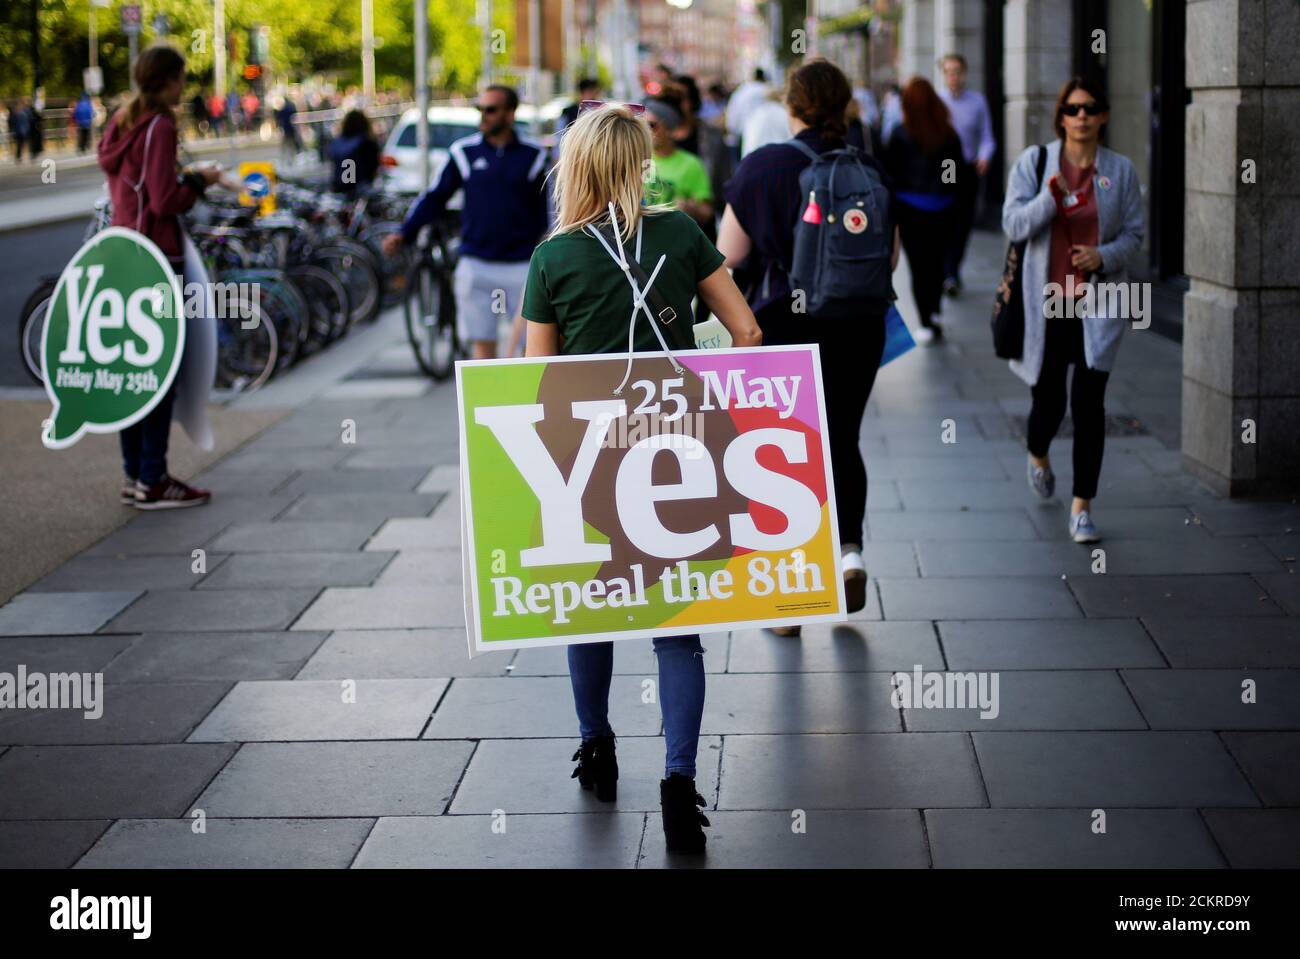 Una mujer lleva un cartel cuando Irlanda celebra un referéndum sobre la liberalización de las leyes de aborto, en Dublín, Irlanda, el 25 de mayo de 2018. REUTERS/Max Rossi Foto de stock